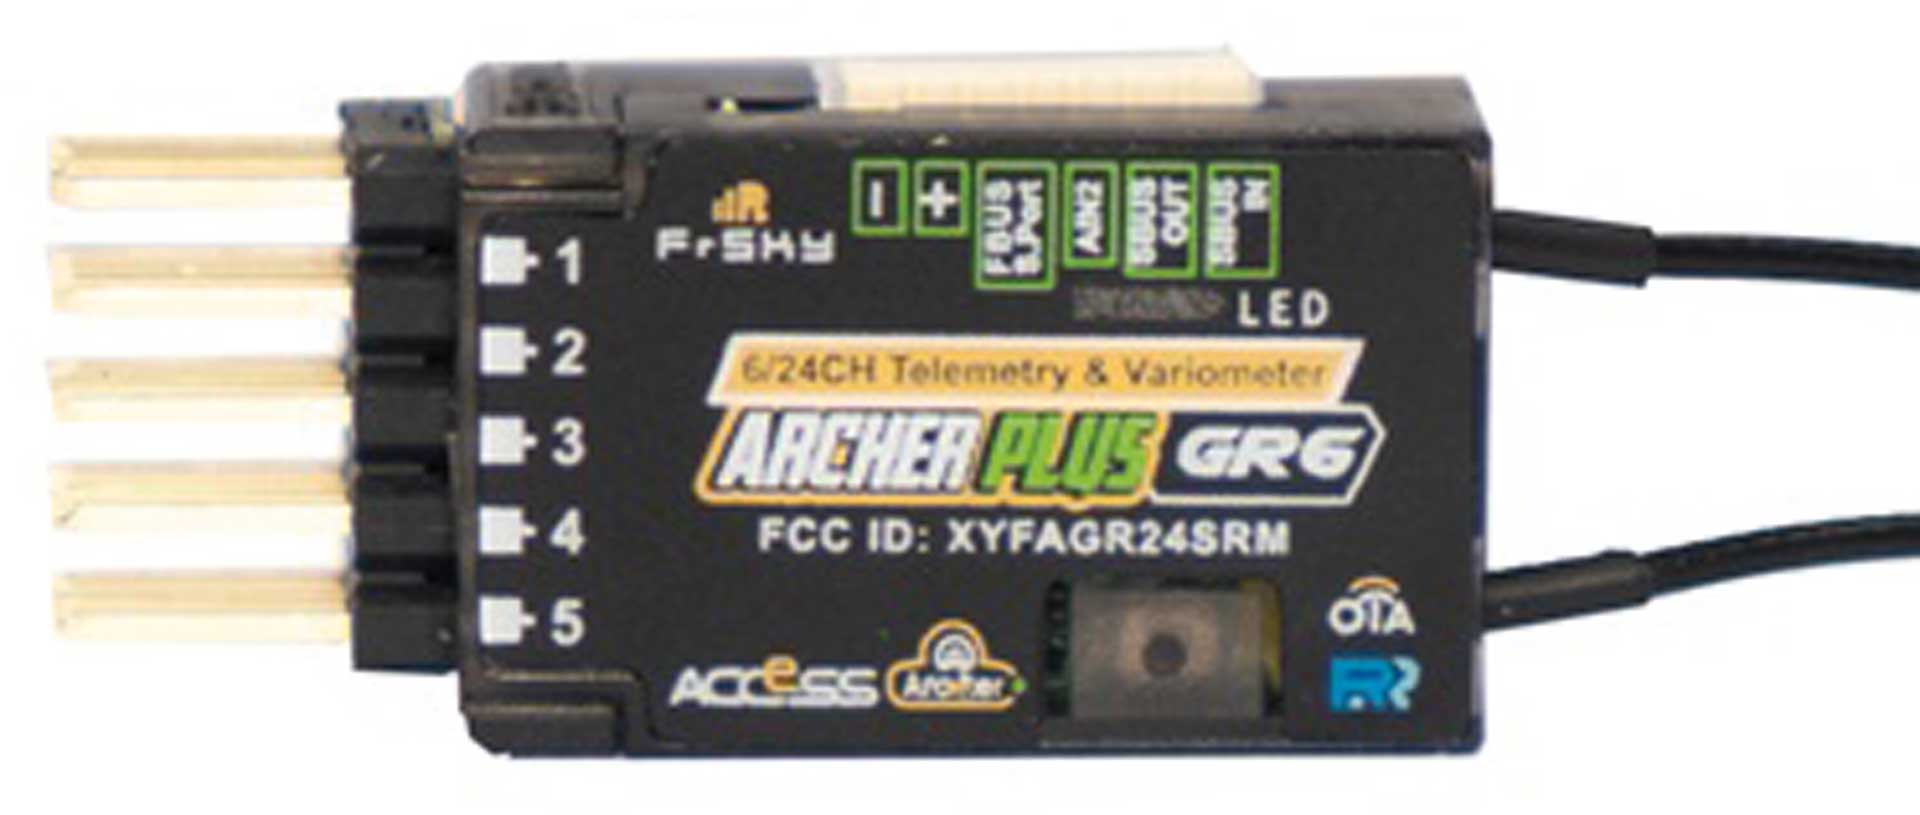 FrSky Récepteur Archer Plus GR6 2,4Ghz